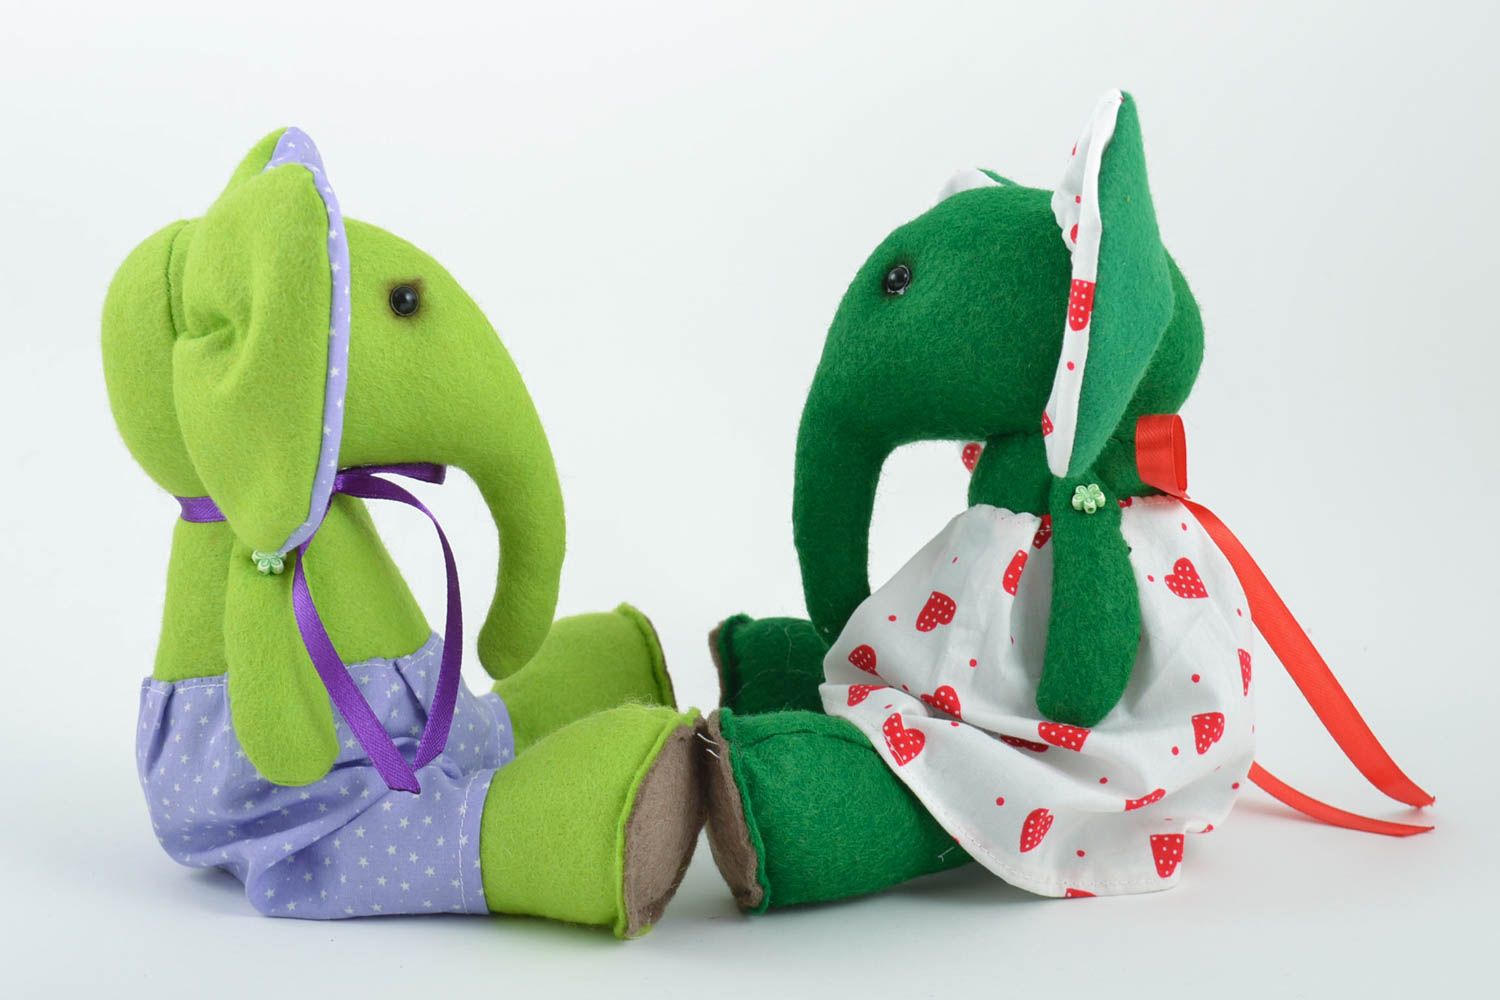 Мягкие игрушки ручной работы слоники из фетра набор 2 штуки зеленый и салатовый фото 1